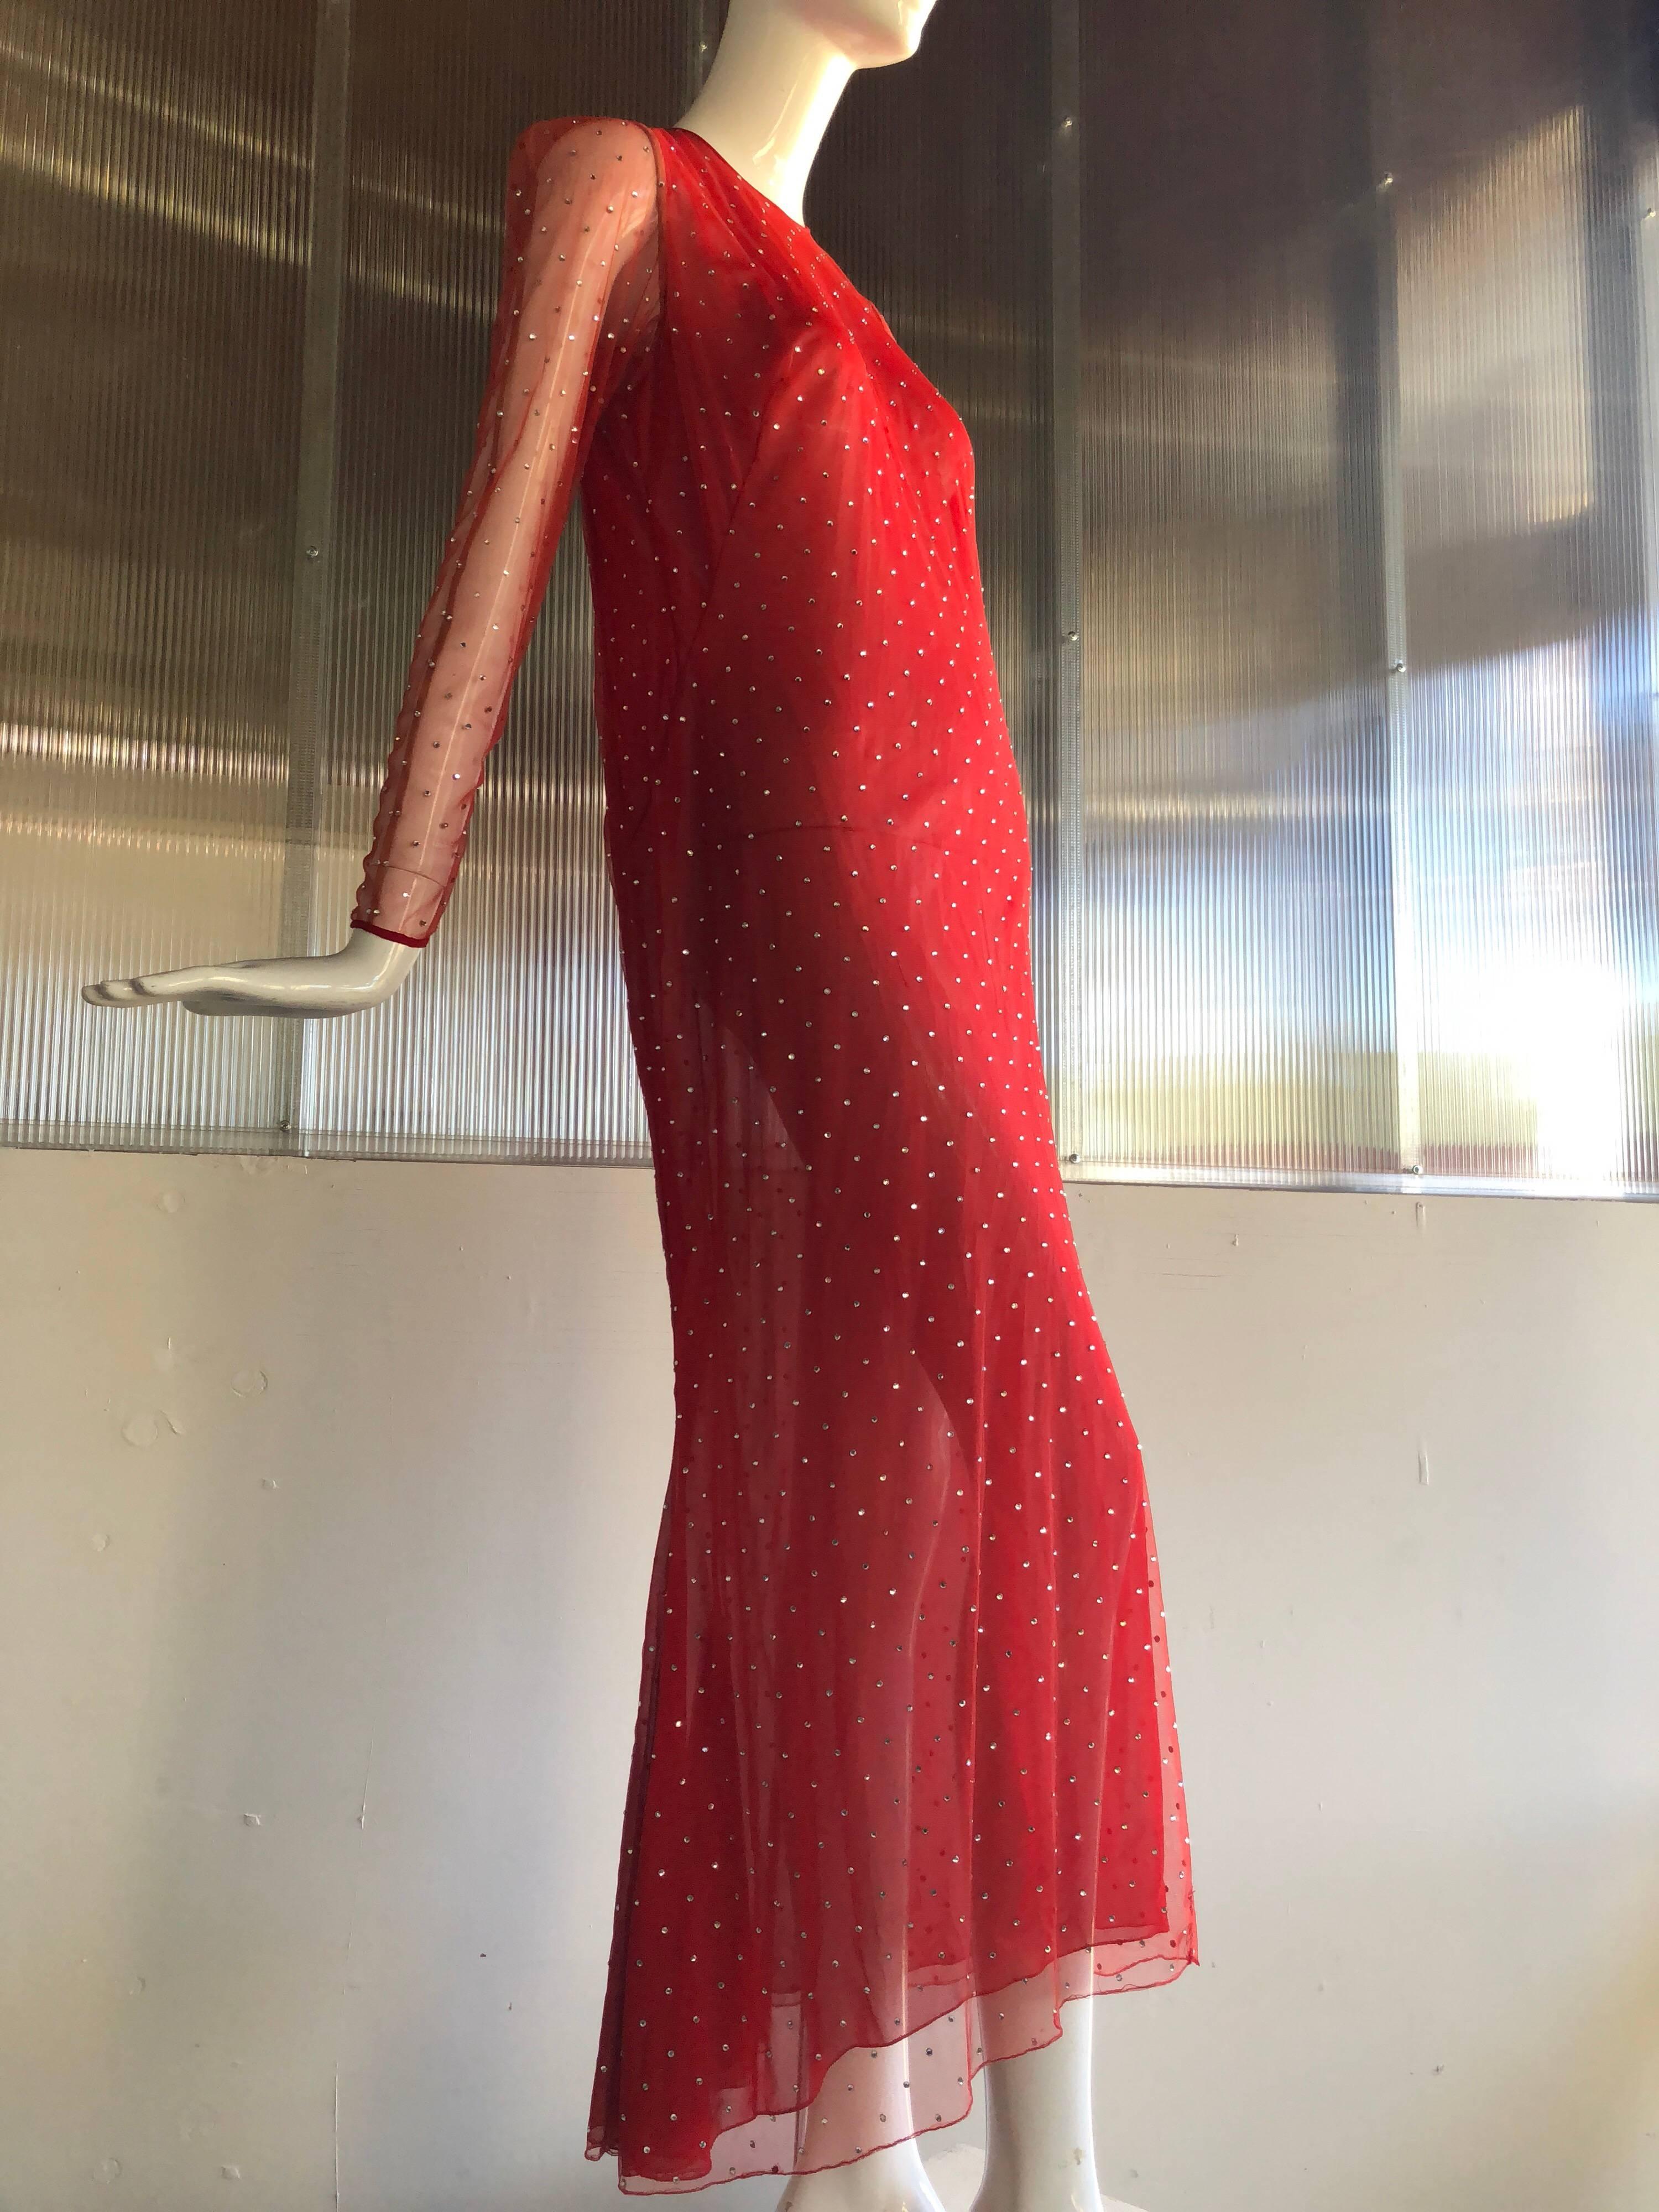 Cette robe en filet Red by Pauline Trigere, classique et caractéristique, est entièrement sertie de strass ! 
Il est doté de longues manches transparentes qui se boutonnent au poignet et de fermetures à glissière dans le dos. Cette silhouette